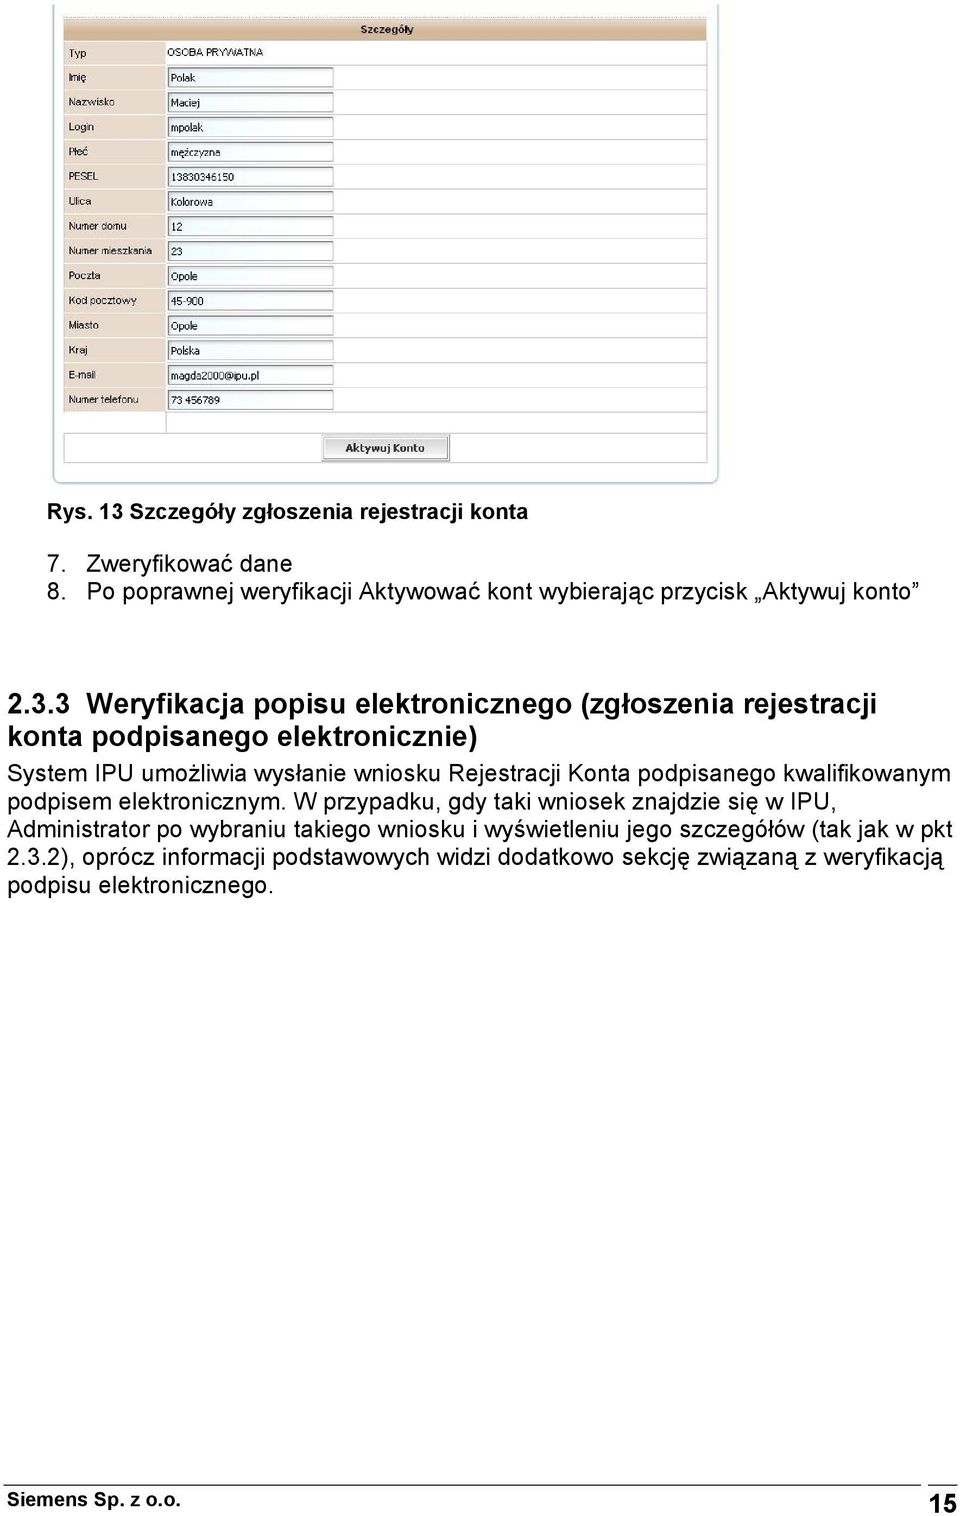 3 Weryfikacja popisu elektronicznego (zgłoszenia rejestracji konta podpisanego elektronicznie) System IPU umożliwia wysłanie wniosku Rejestracji Konta